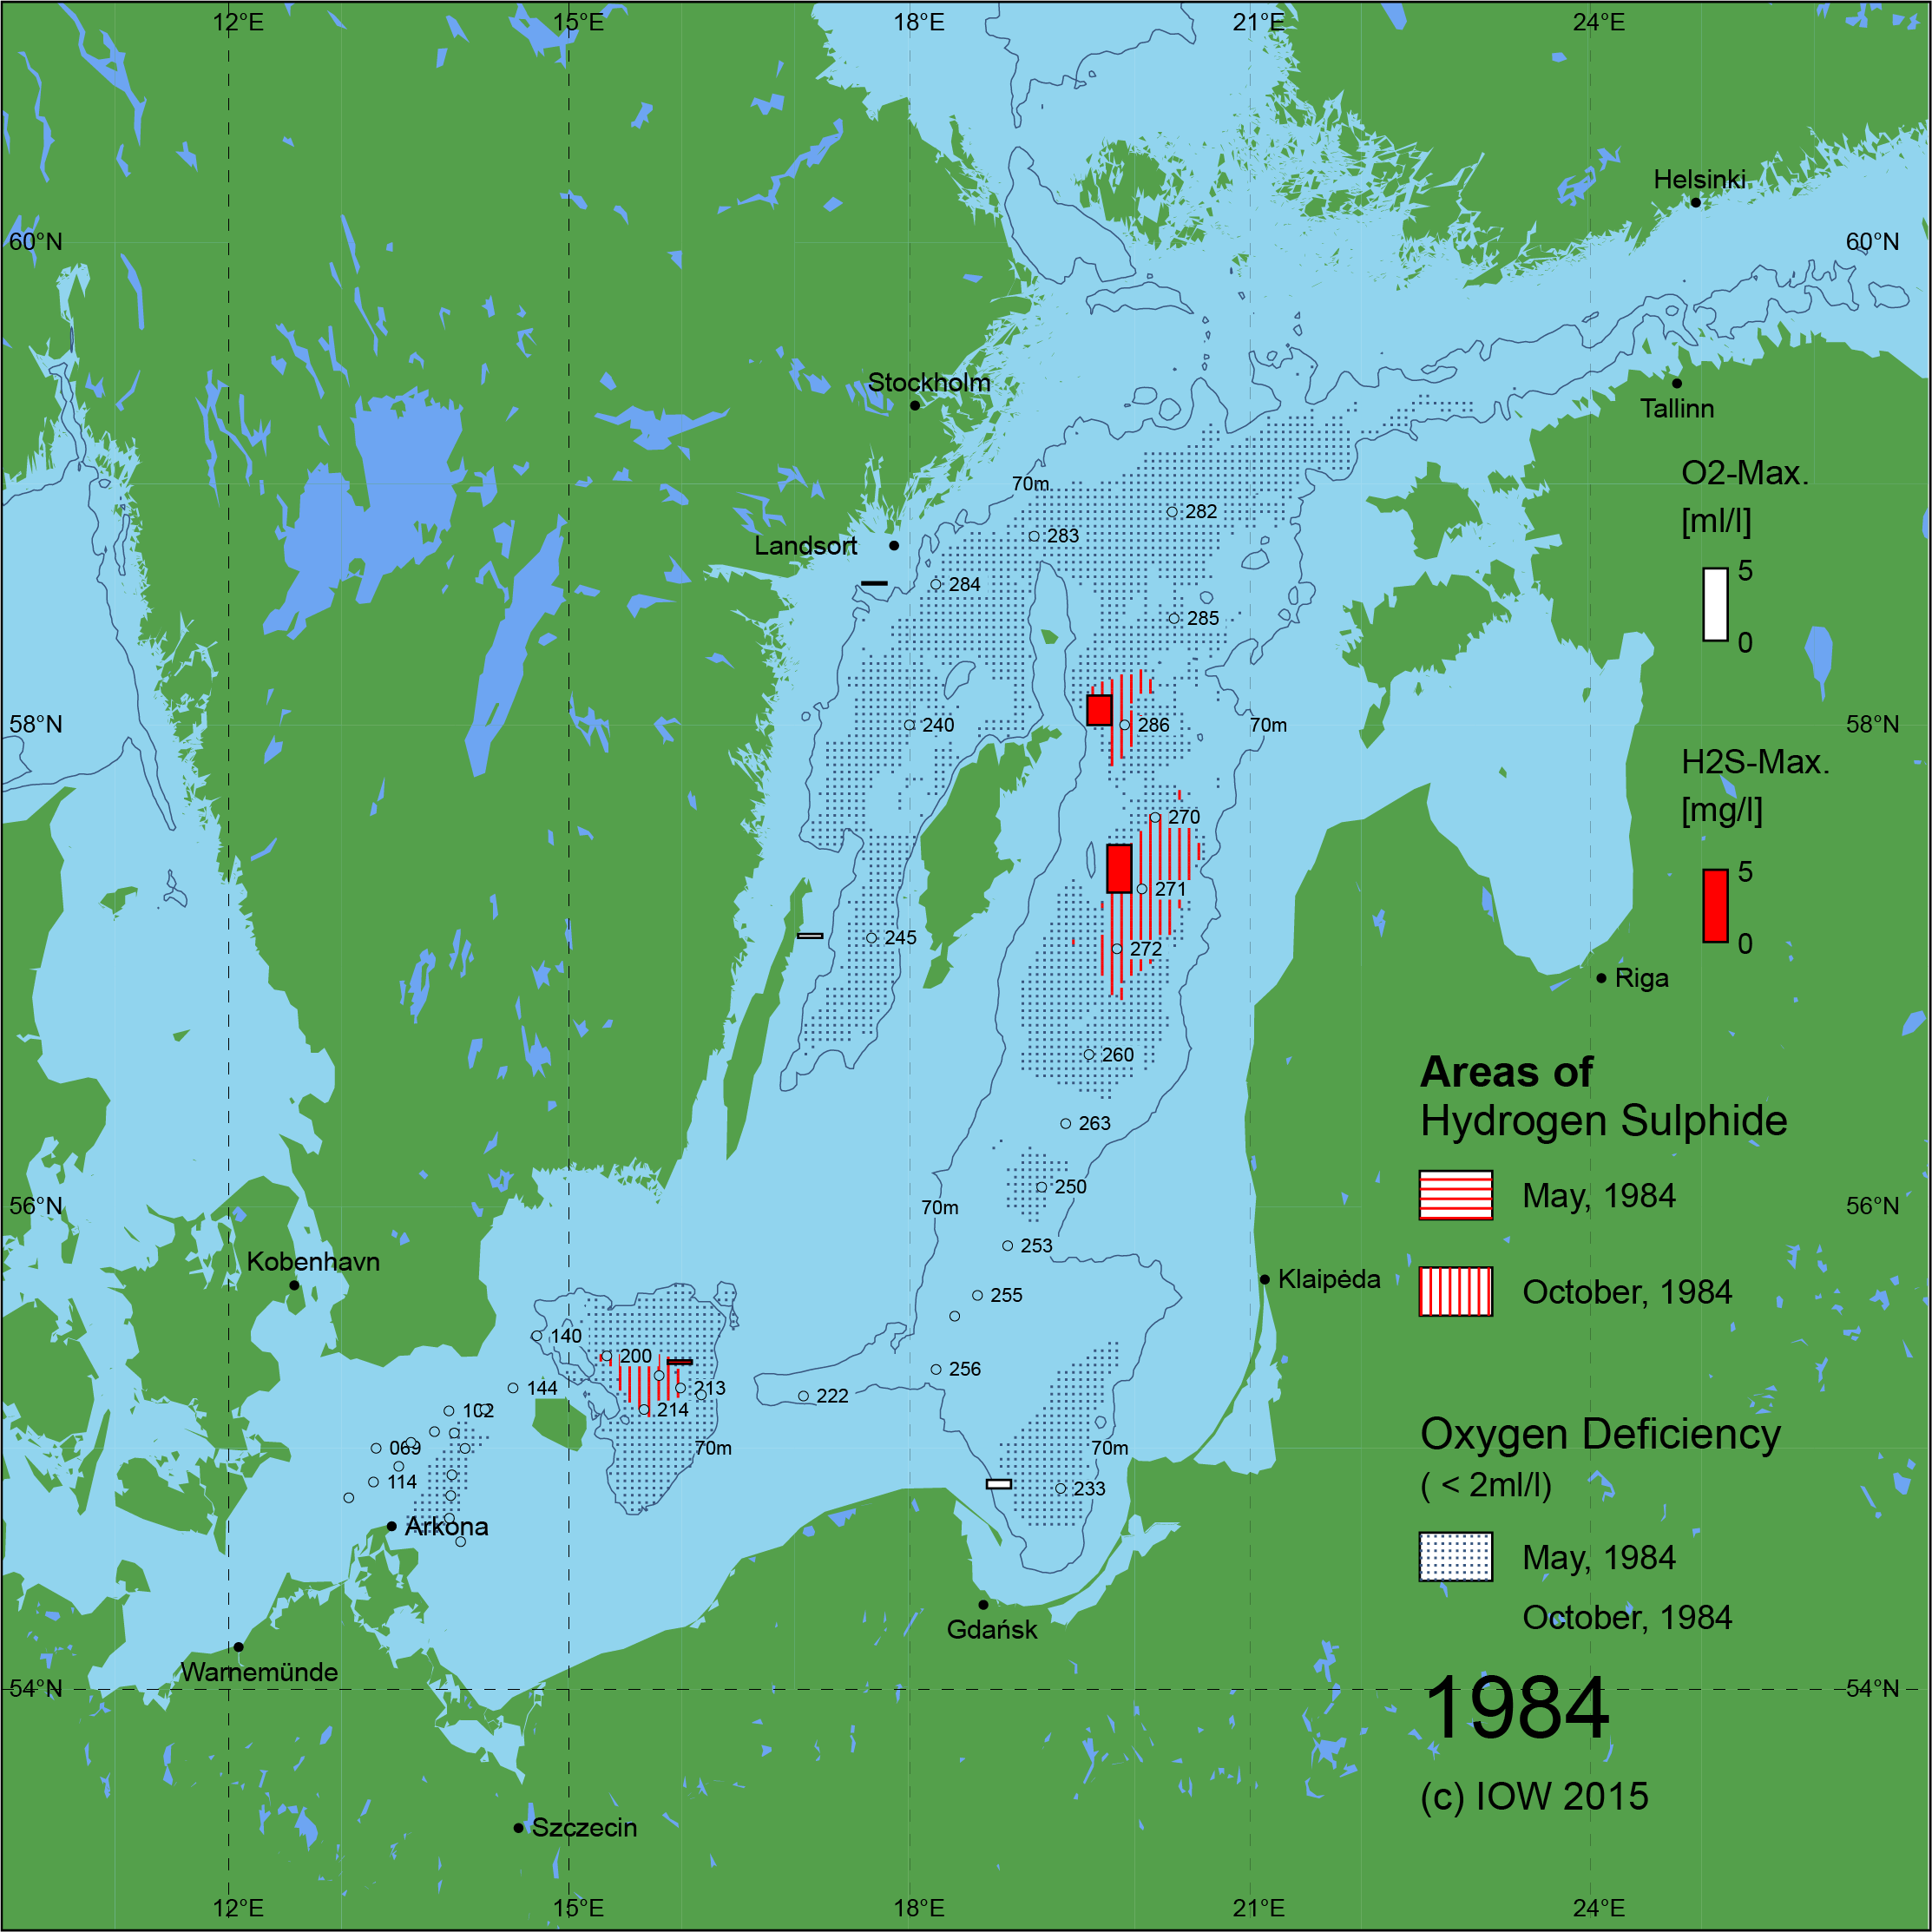 Sauerstoffarme und sauerstofffreie Gebiete in der Ostsee - 1984